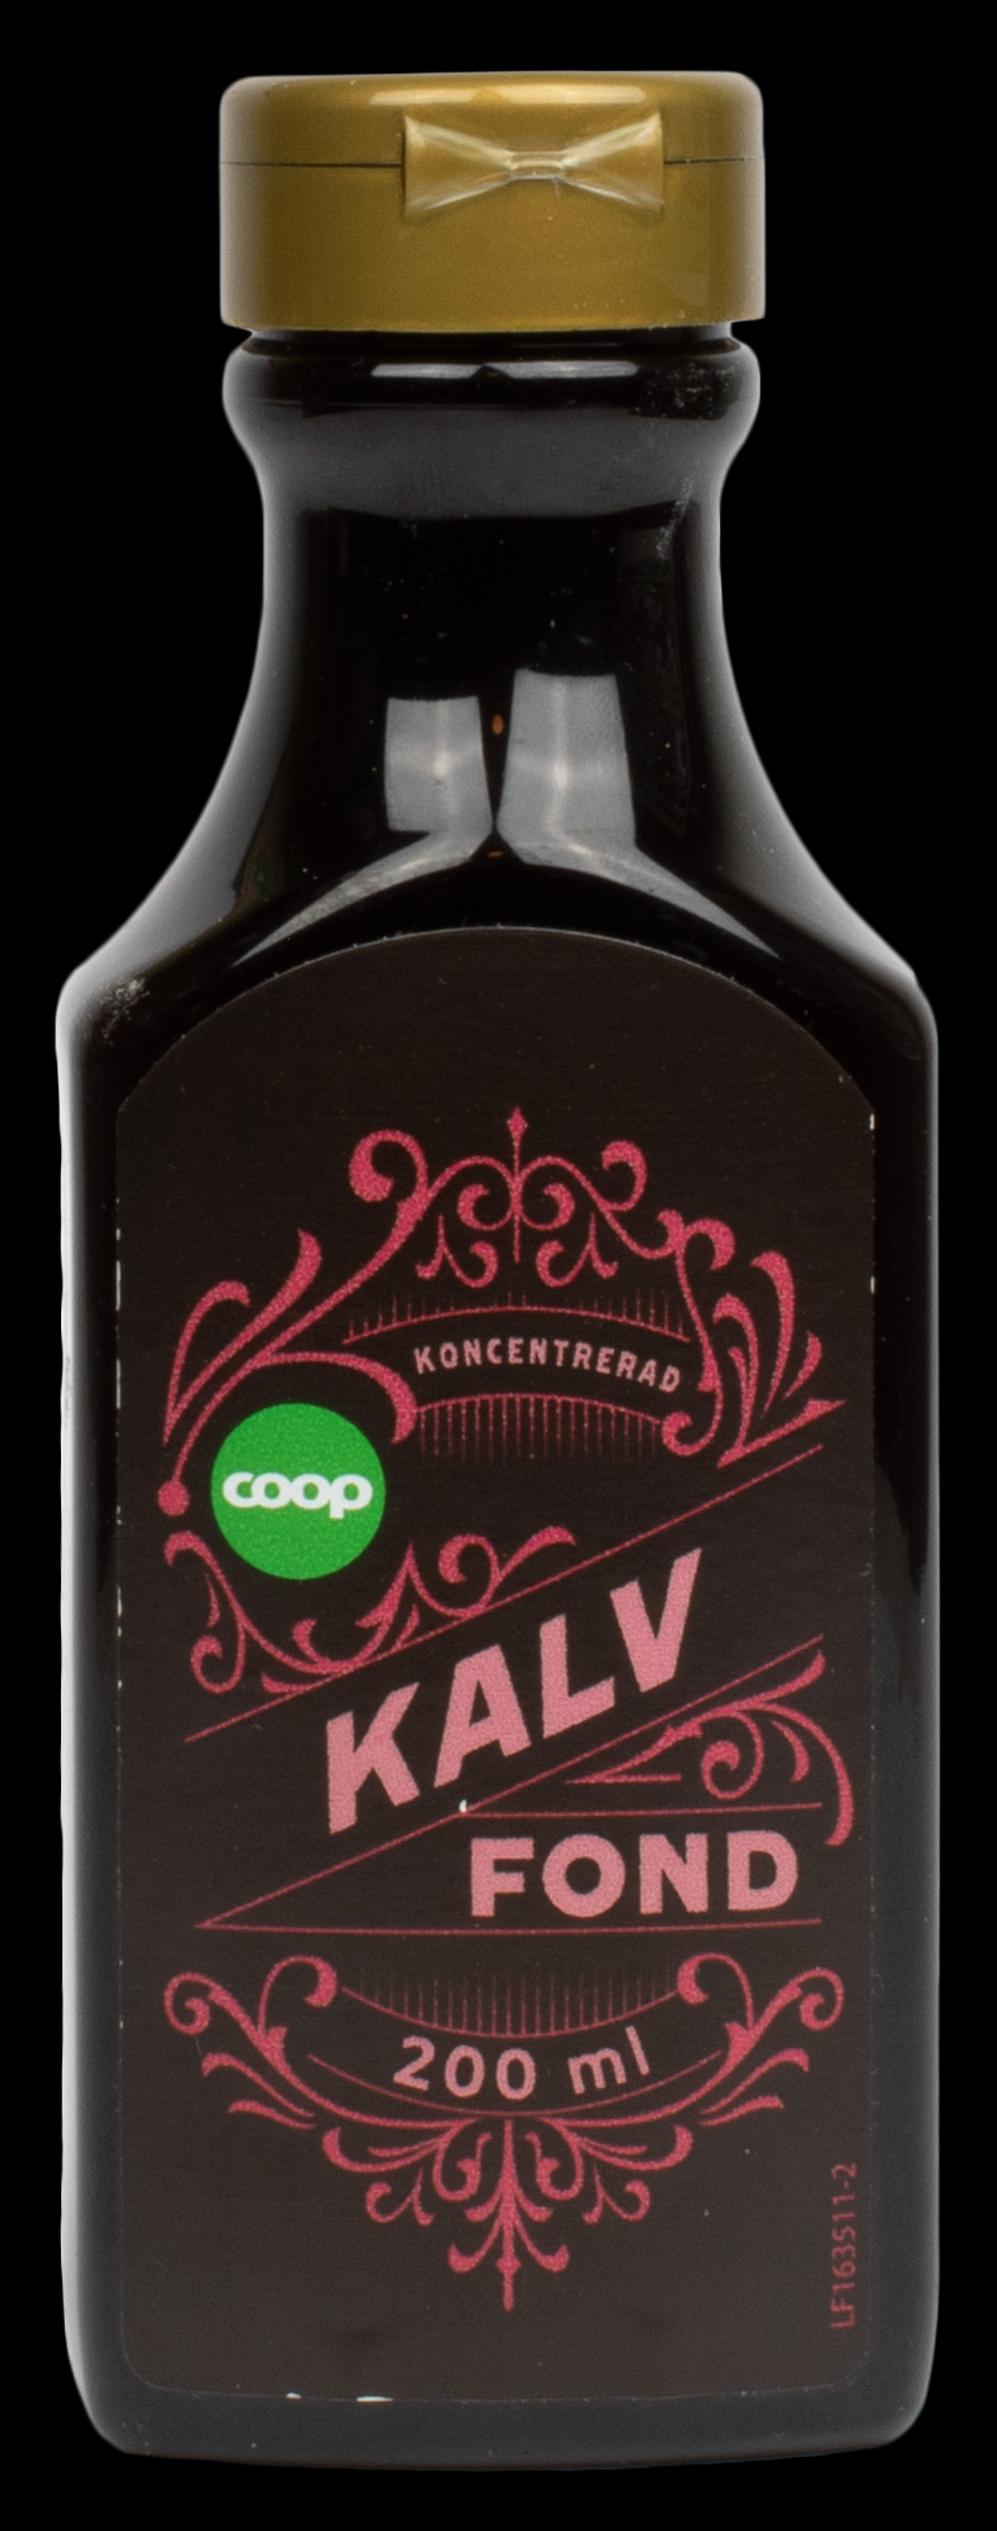 Coop – Kalvfond är nominerad till anti-priset Årets matbluff 2023.